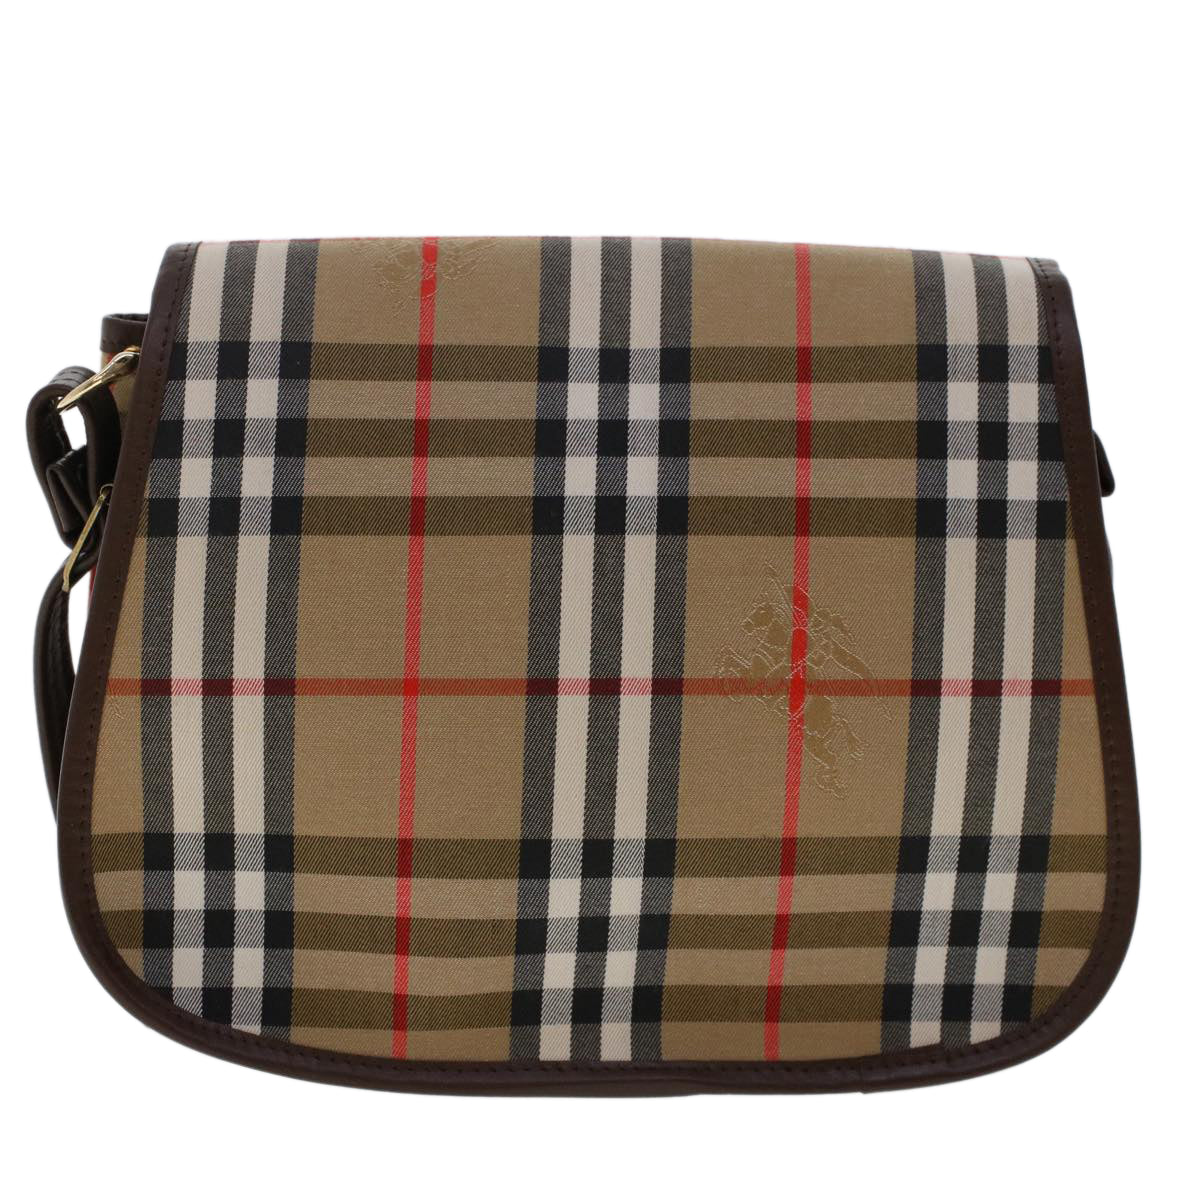 Burberrys Nova Check Shoulder Bag Canvas Beige Brown Auth 48165 - 0